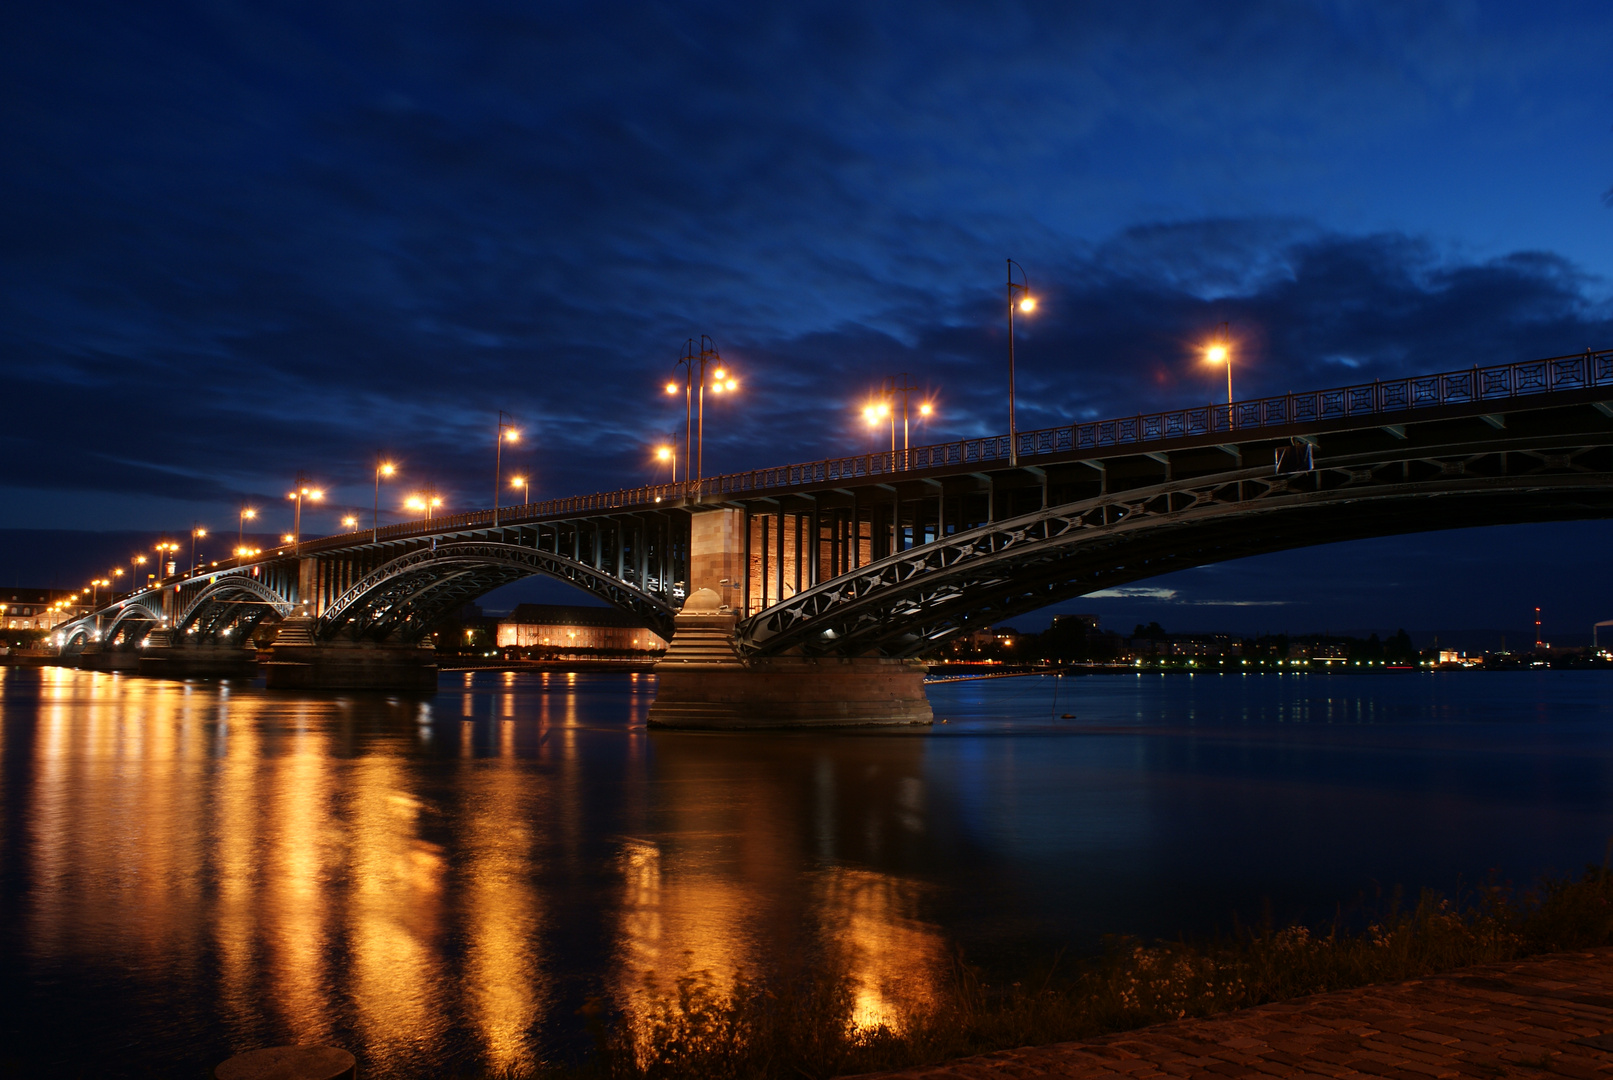 Throdor-Heuss-Brücke @ Night